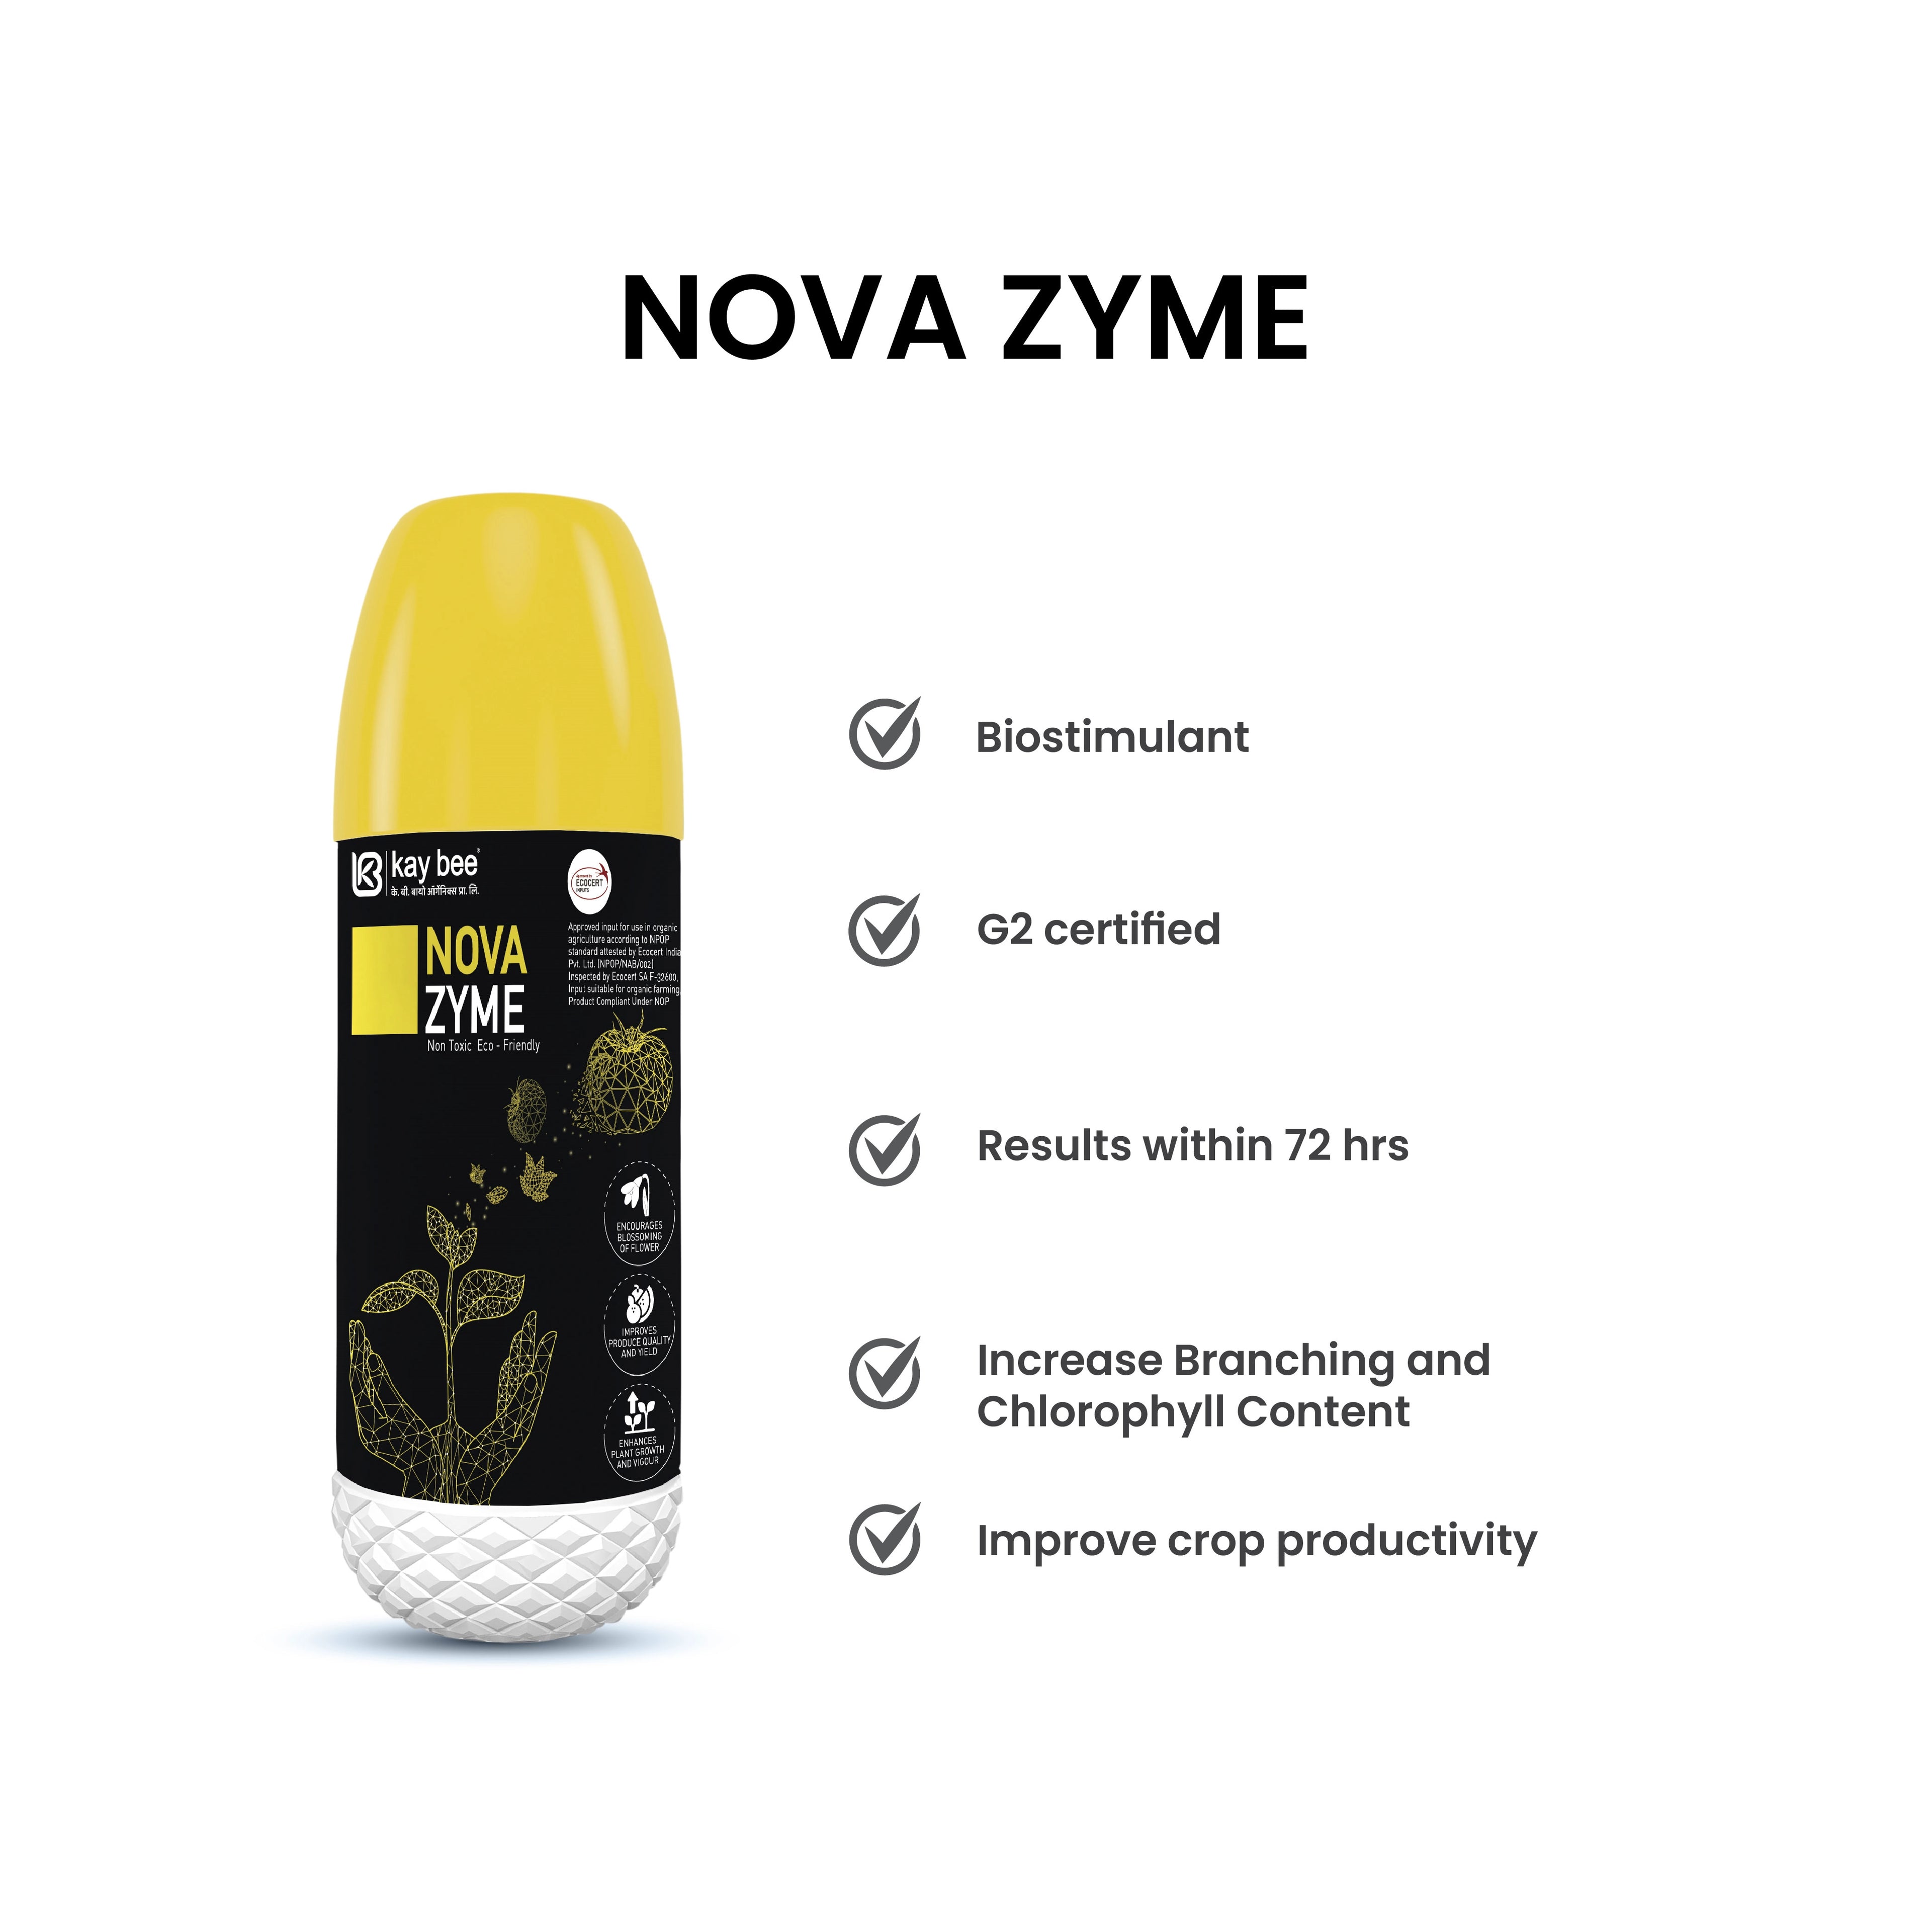 KAY BEE - NOVA ZYME GROWTH REGULATOR product  Image